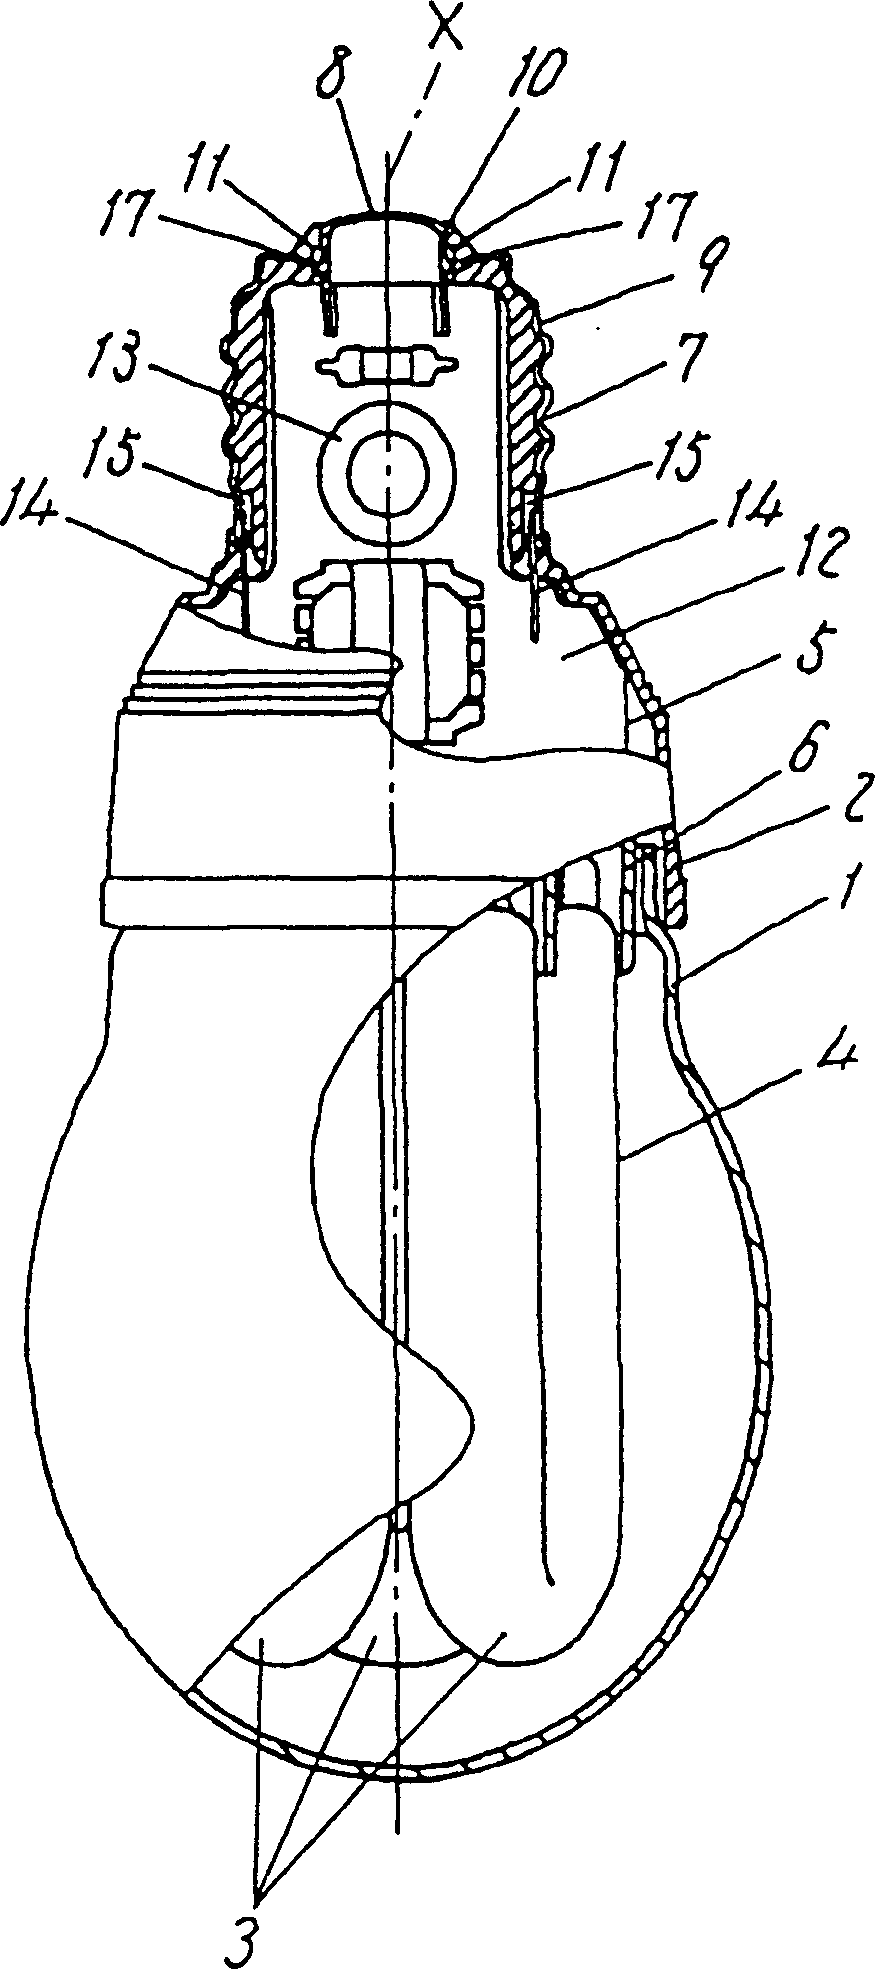 Tubular lamp and mfg. method thereof